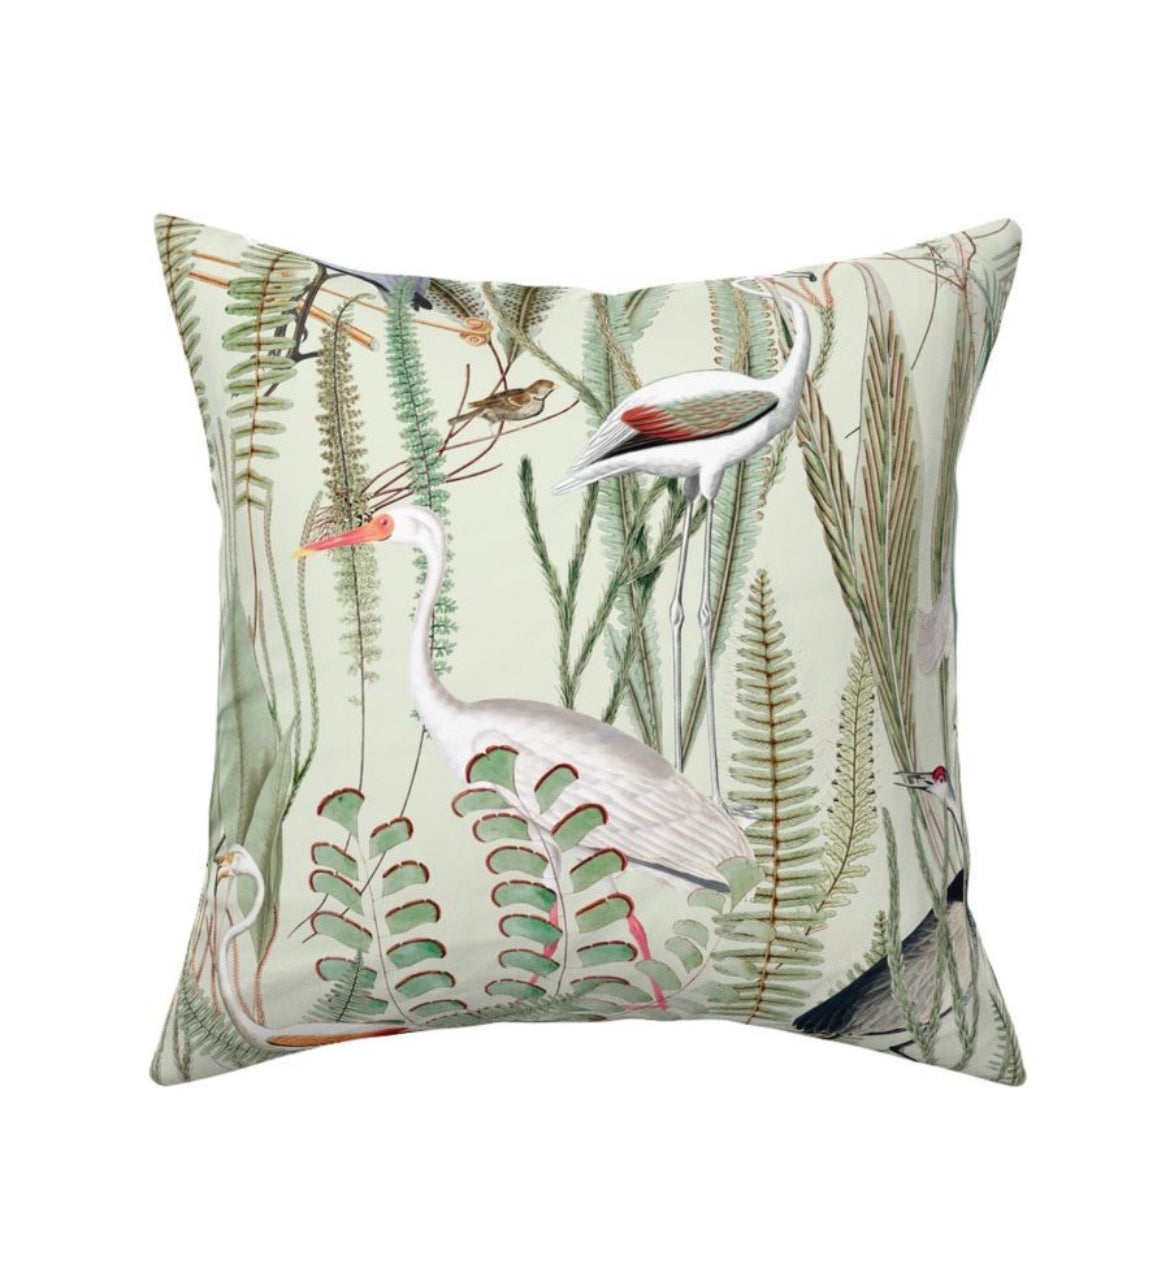 Herons in Marsh Pillow Cover